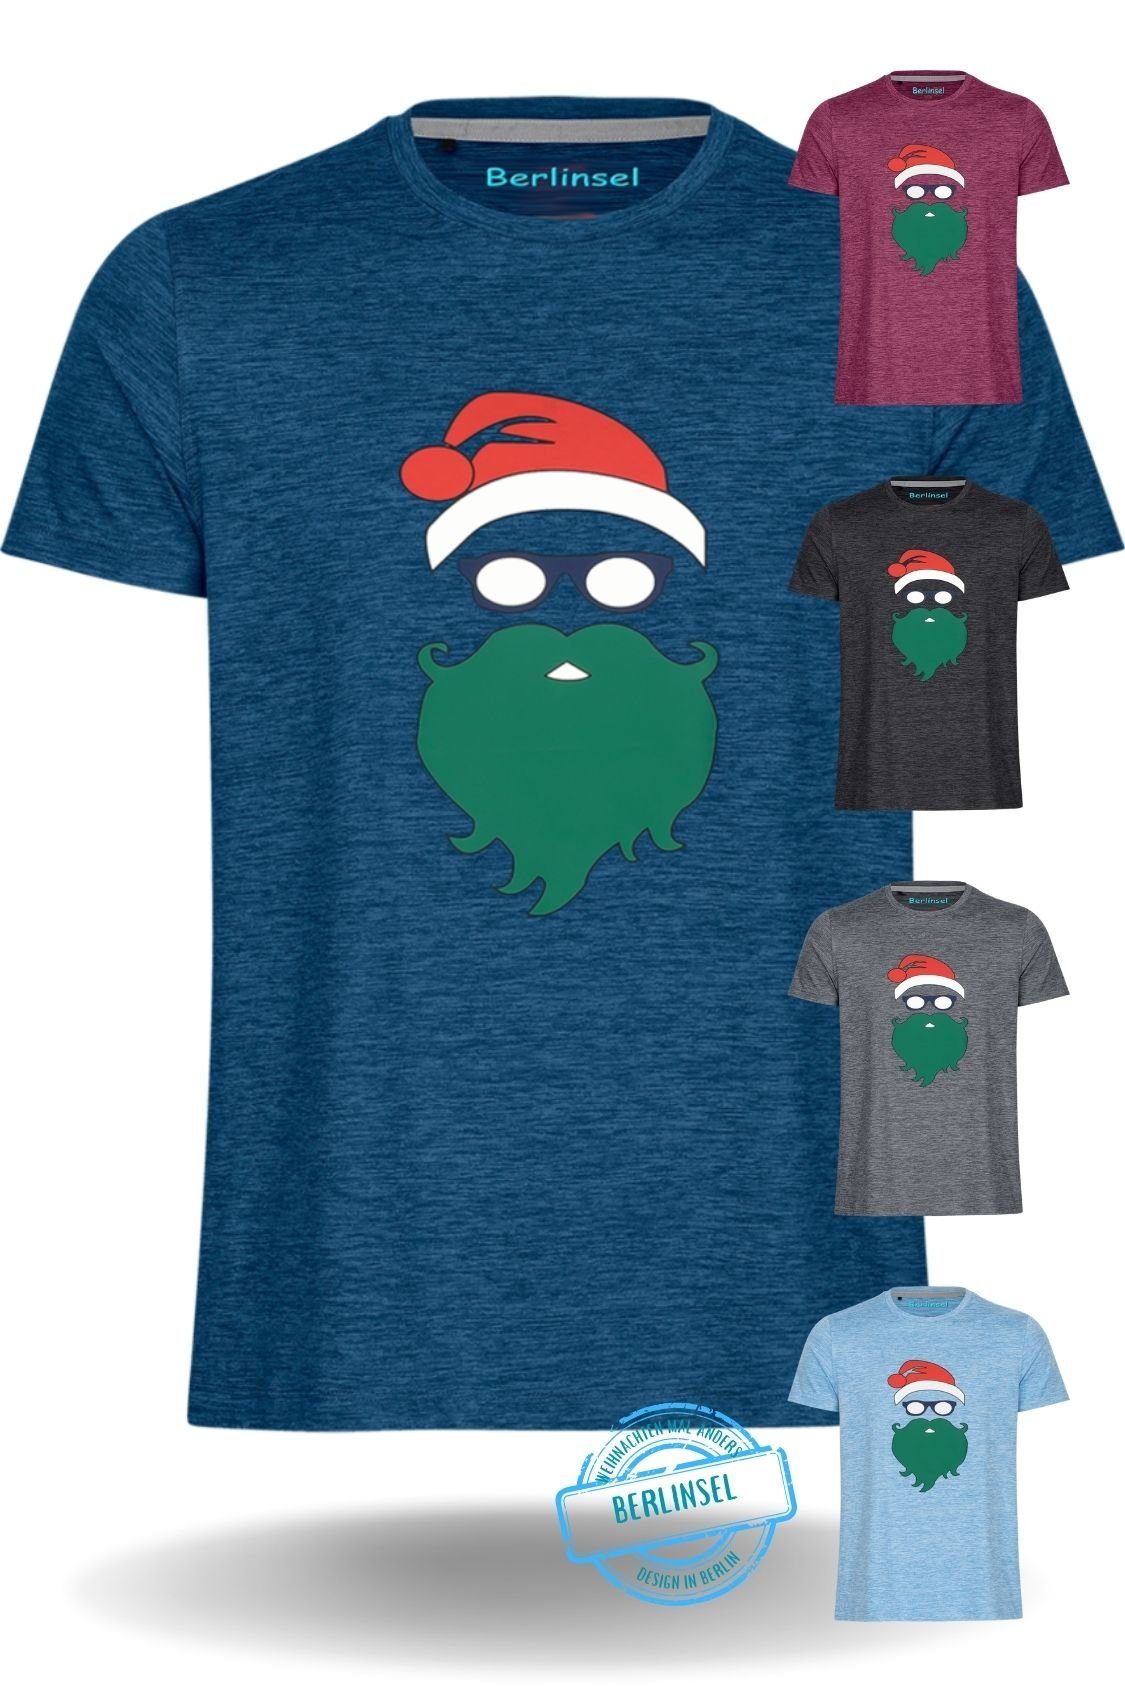 Berlinsel T-Shirt Printshirt Weihnachtsshirt Männer Weihnachtsoutfit Herren Weihnachtsfeier, Weihnachtsgeschenk, Weihnachtsfoto blau